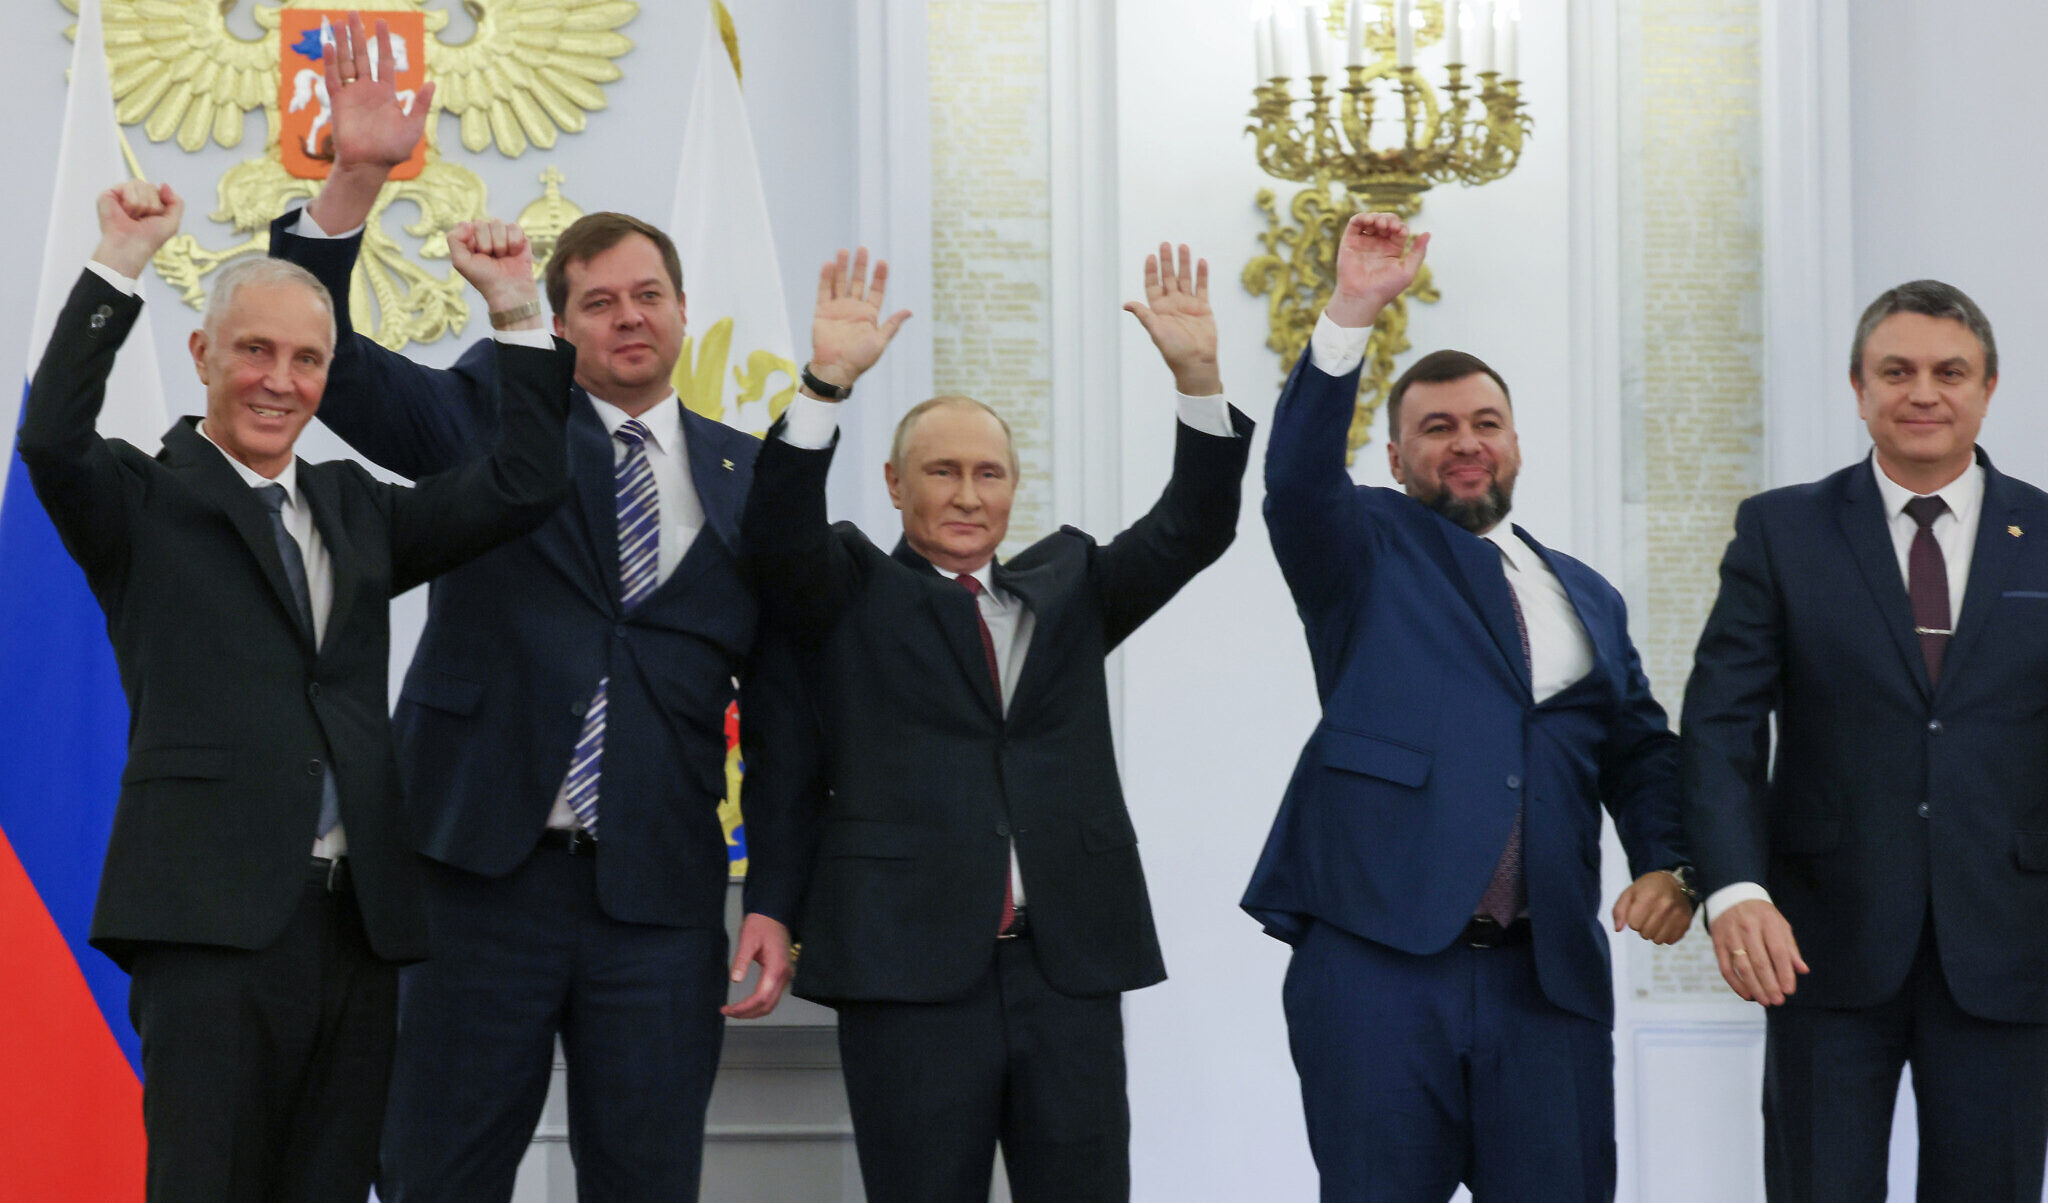 Putin proclama il 'giorno della riunificazione' per l'Ucraina invasa: così addio negoziati